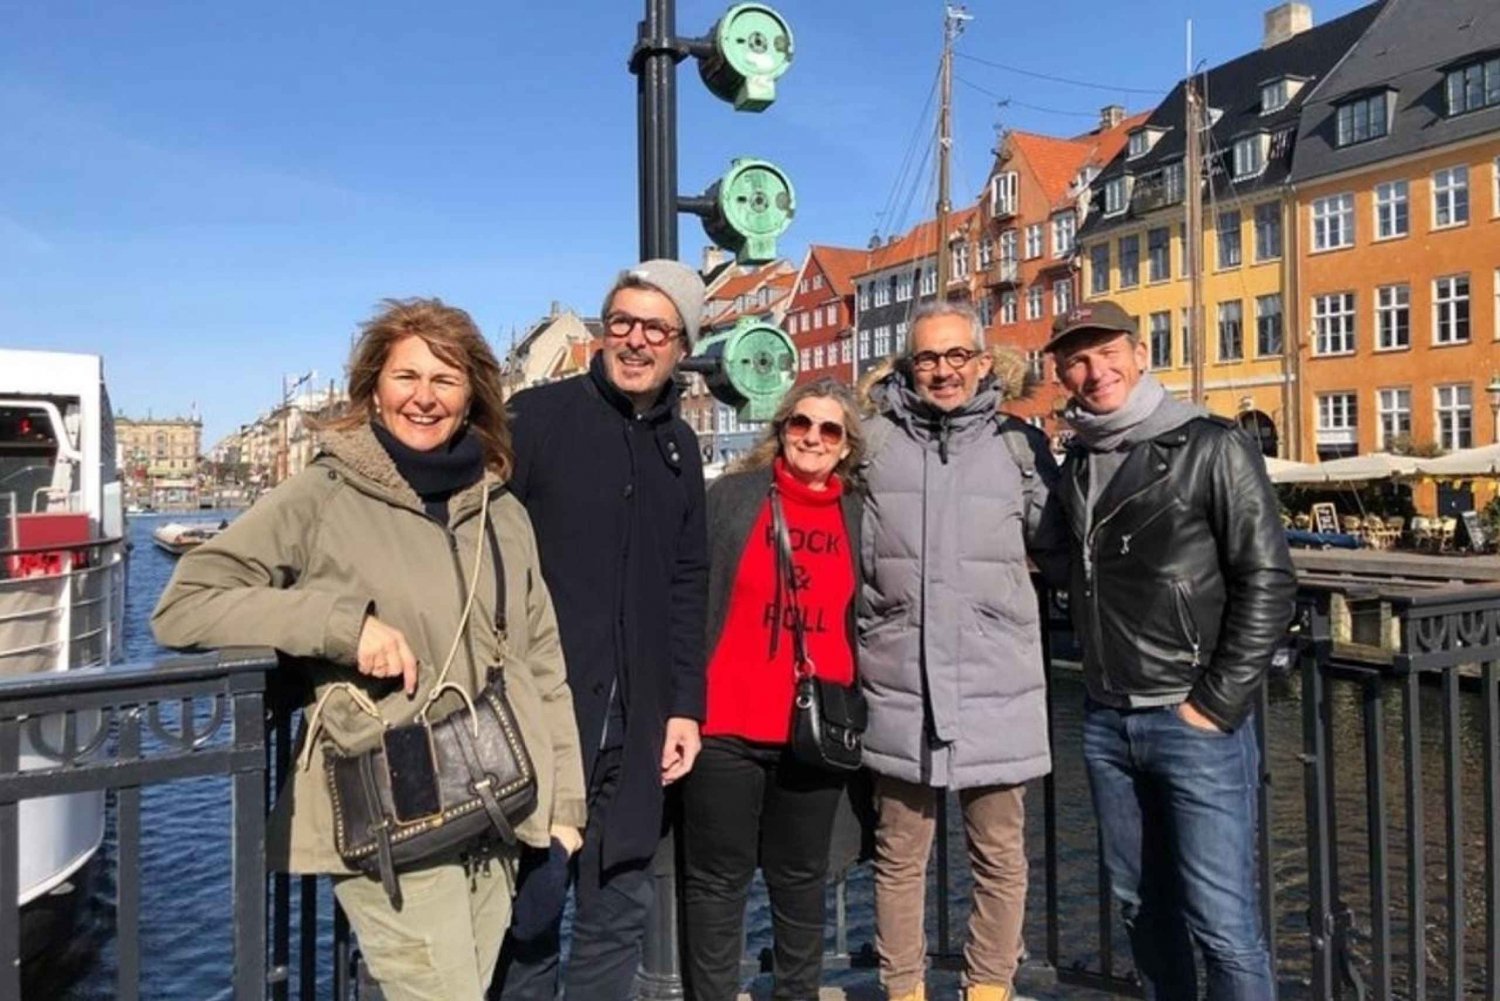 København: Byens høydepunkter byvandring med lokal guide